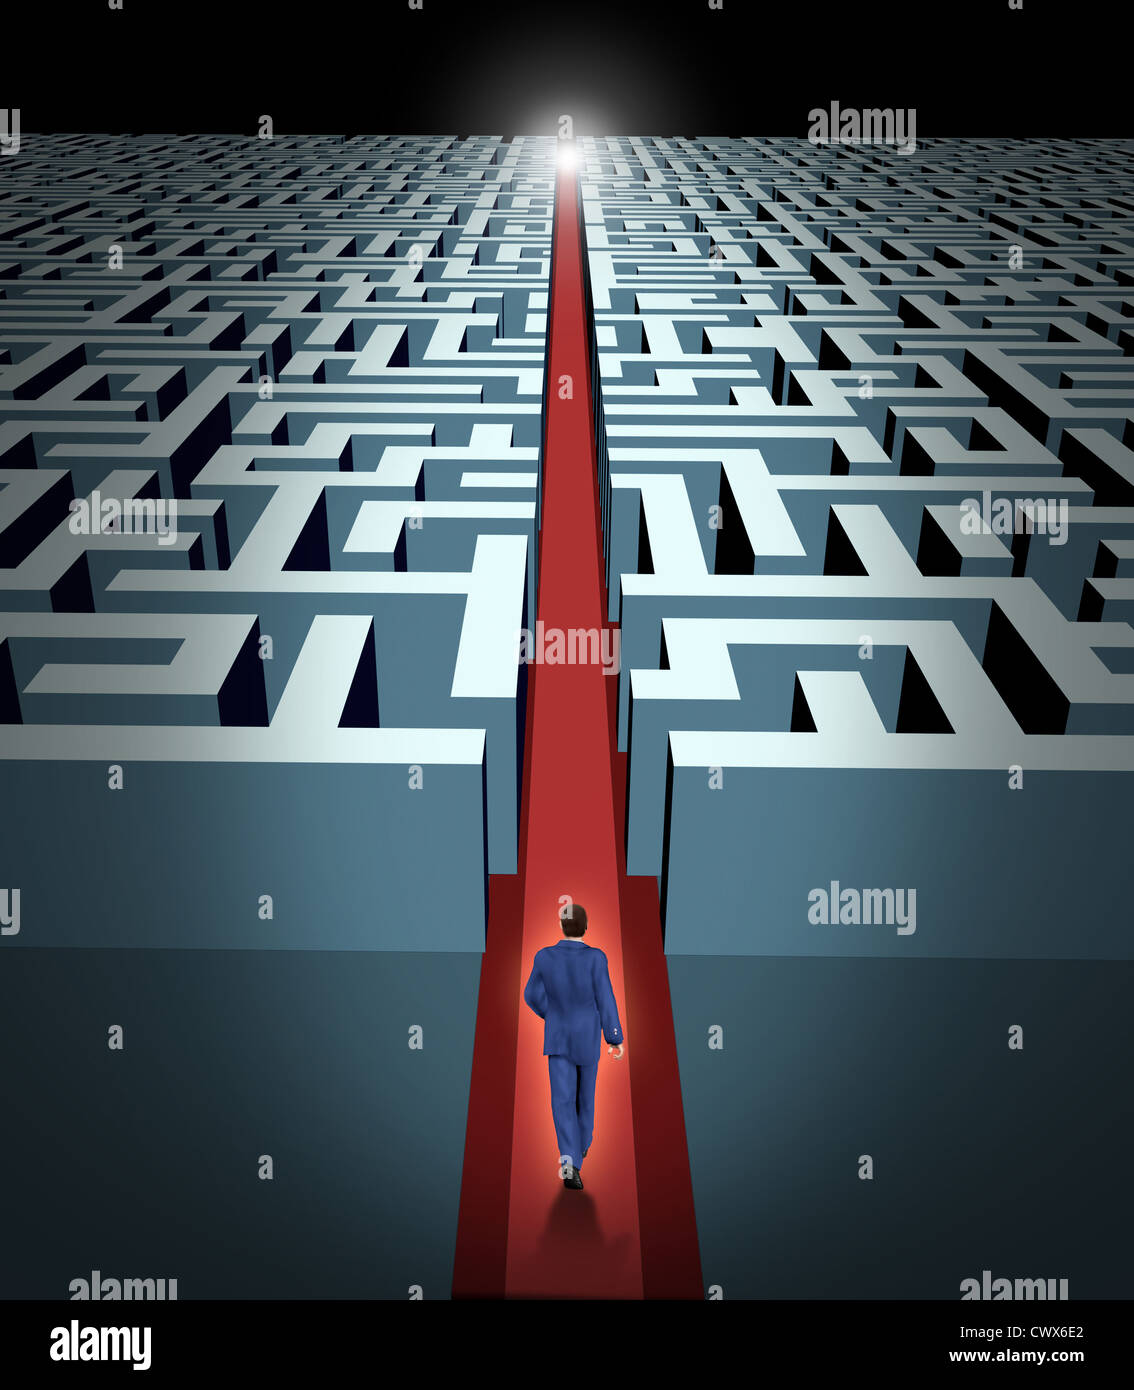 Leadership et vision d'affaires avec la stratégie d'entreprise à travers les défis et les obstacles représentés par un labyrinthe et un homme d'affaires dans un labyrinthe avec une solution claire chemin raccourci ouvert auprès d'un tapis de velours rouge pour montrer la voie du succès et de la victoire. Banque D'Images